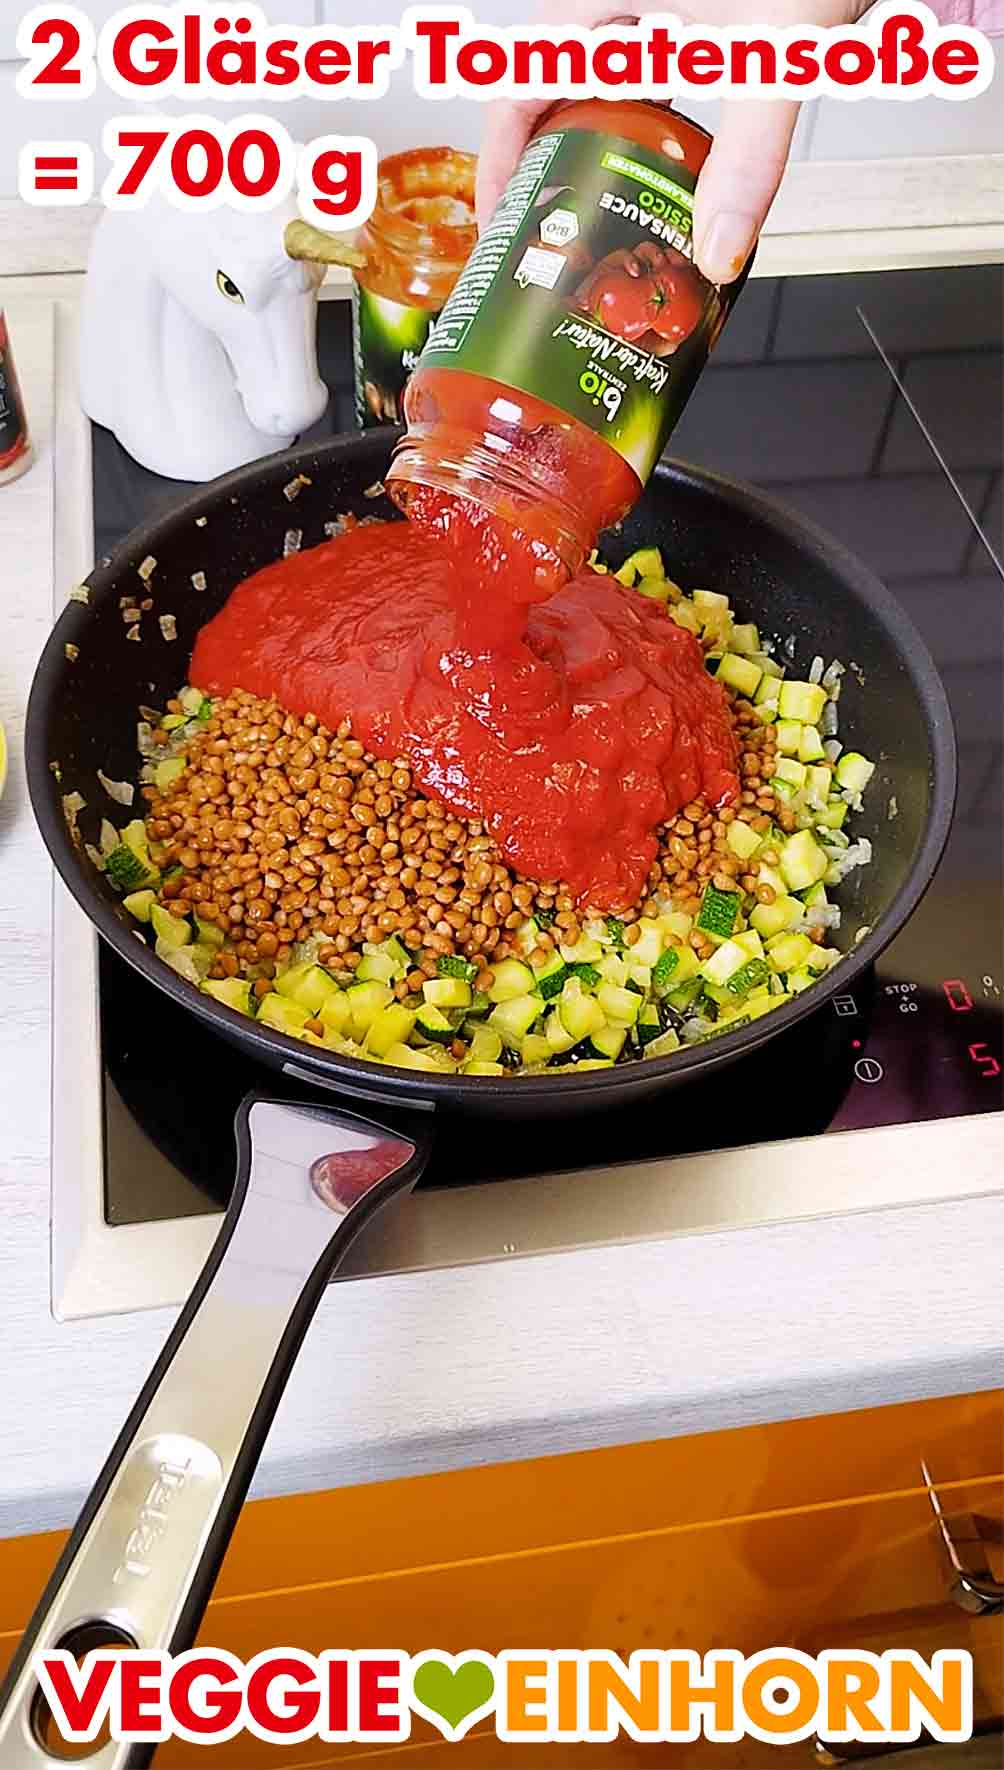 Vegane Tomatensoße aus dem Glas wird in die Pfanne gegeben